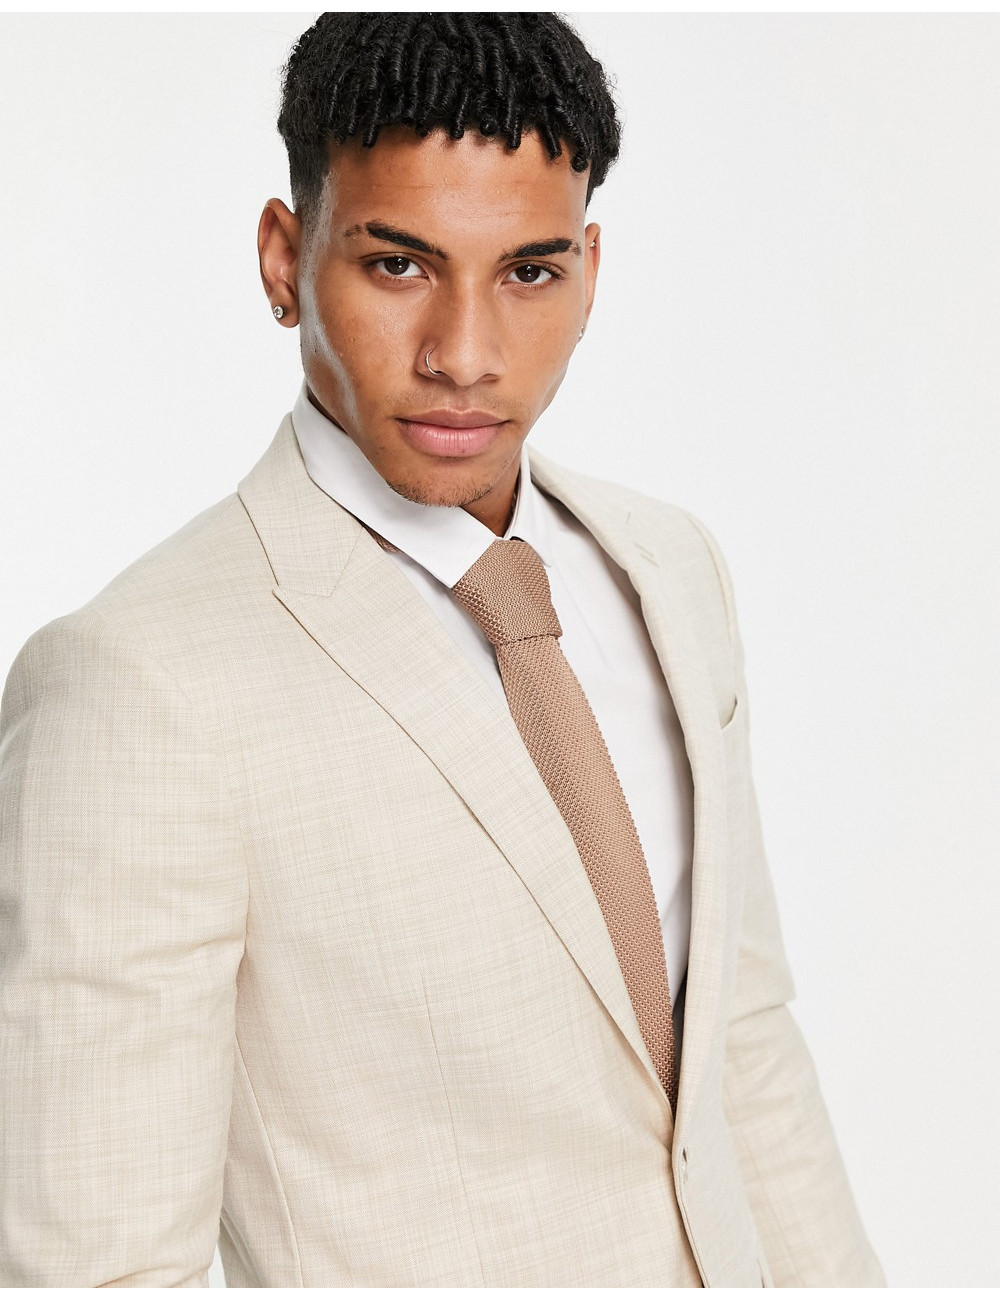 ASOS DESIGN Plus wedding skinny suit jacket in blue wool blend